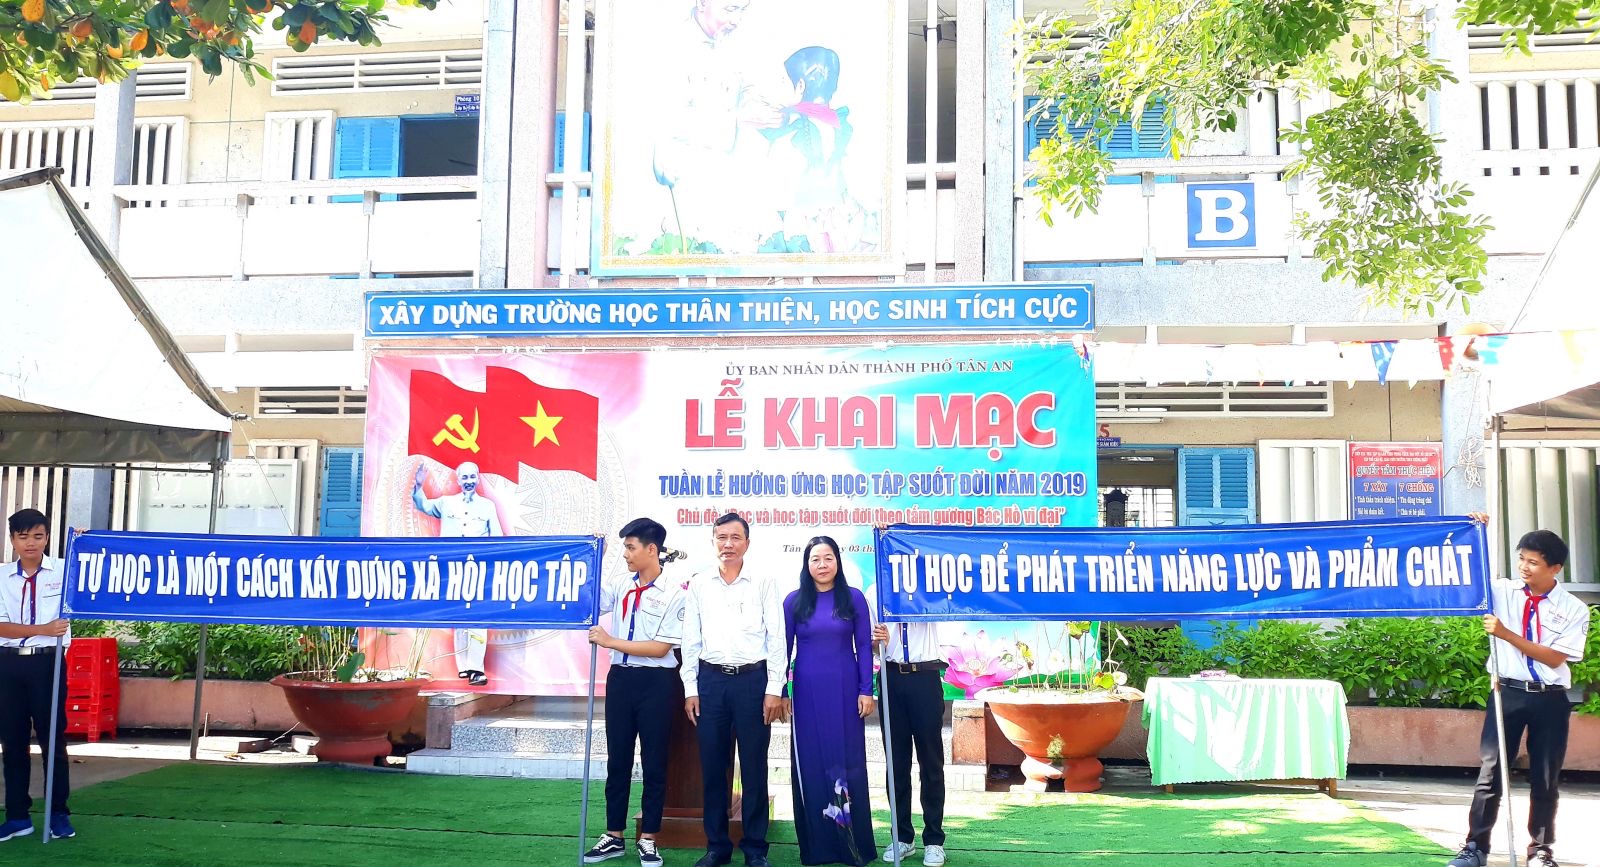 3_10_2019 TPTA KHAI MAC TUAN LE HUONG UNG HOC TAP SUOT DOI 2019 2